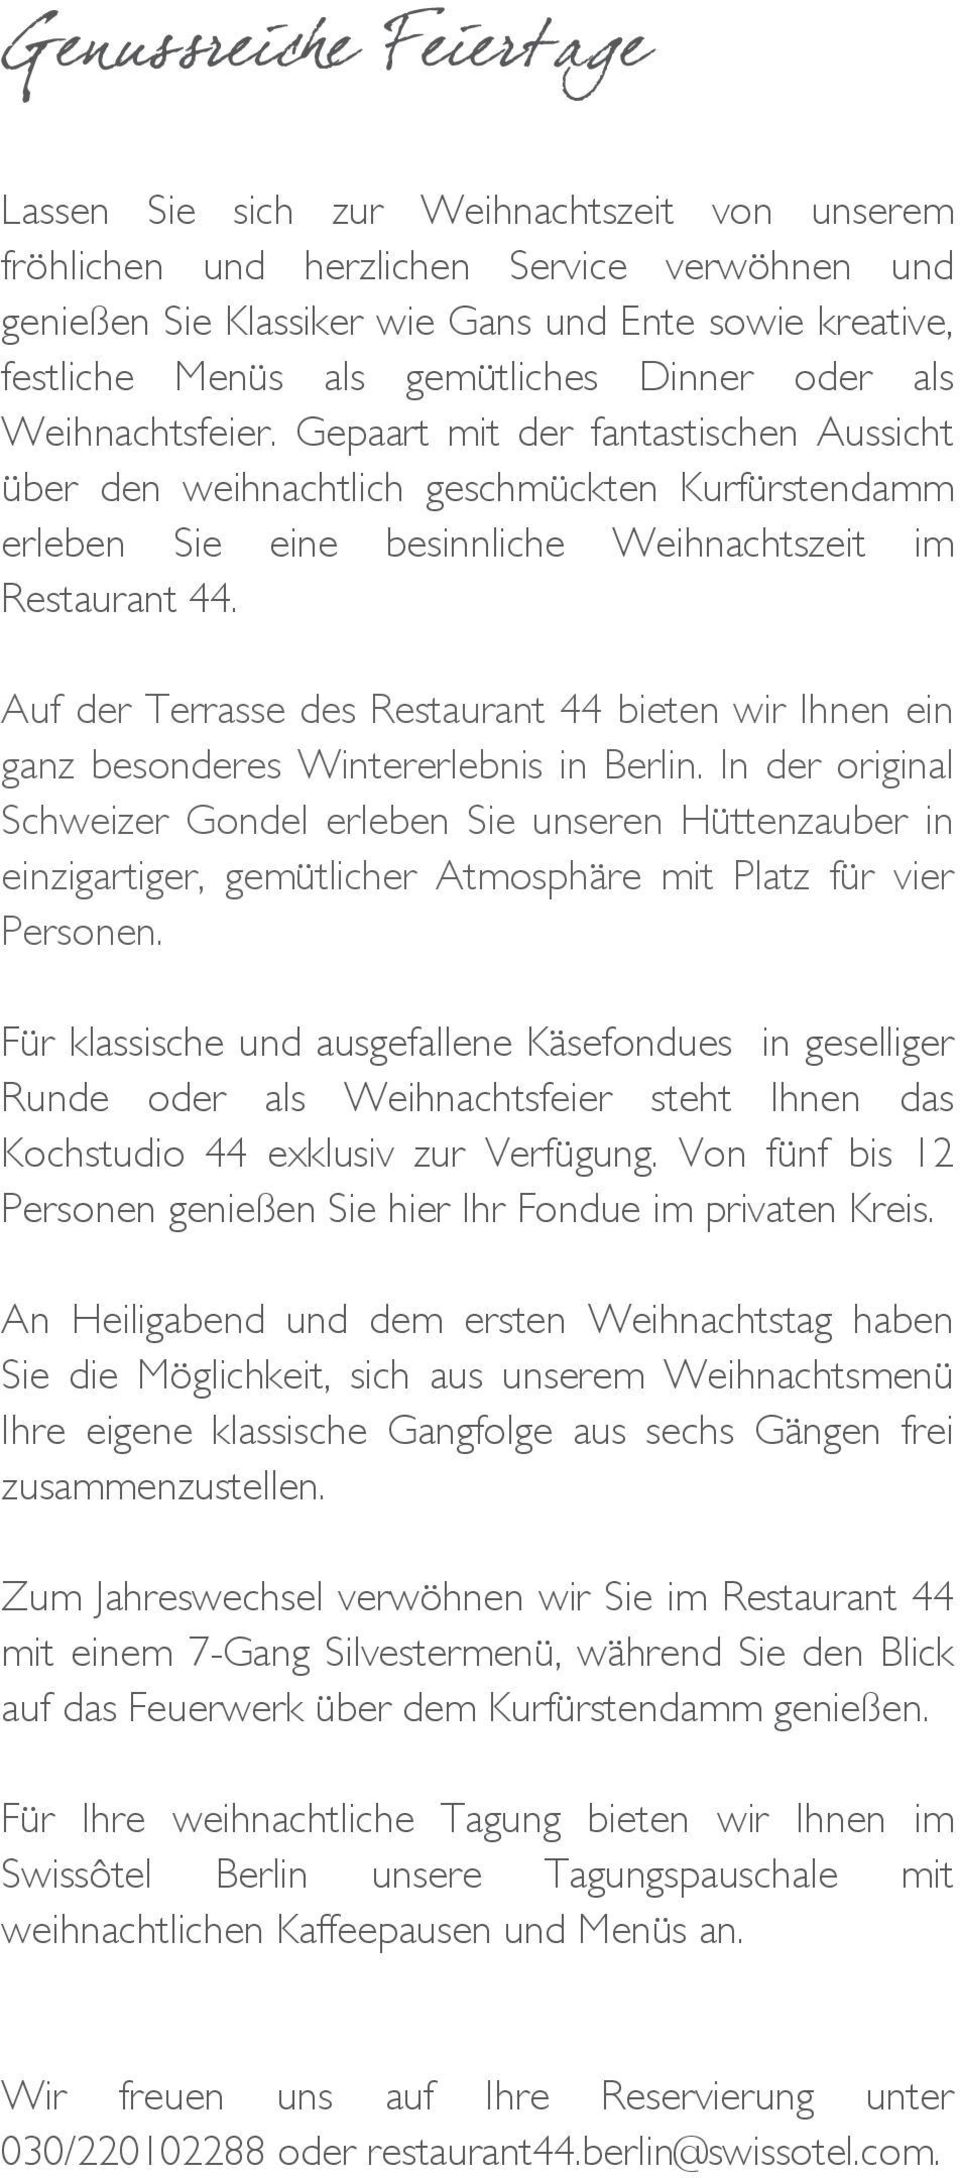 Auf der Terrasse des Restaurant 44 bieten wir Ihnen ein ganz besonderes Wintererlebnis in Berlin.